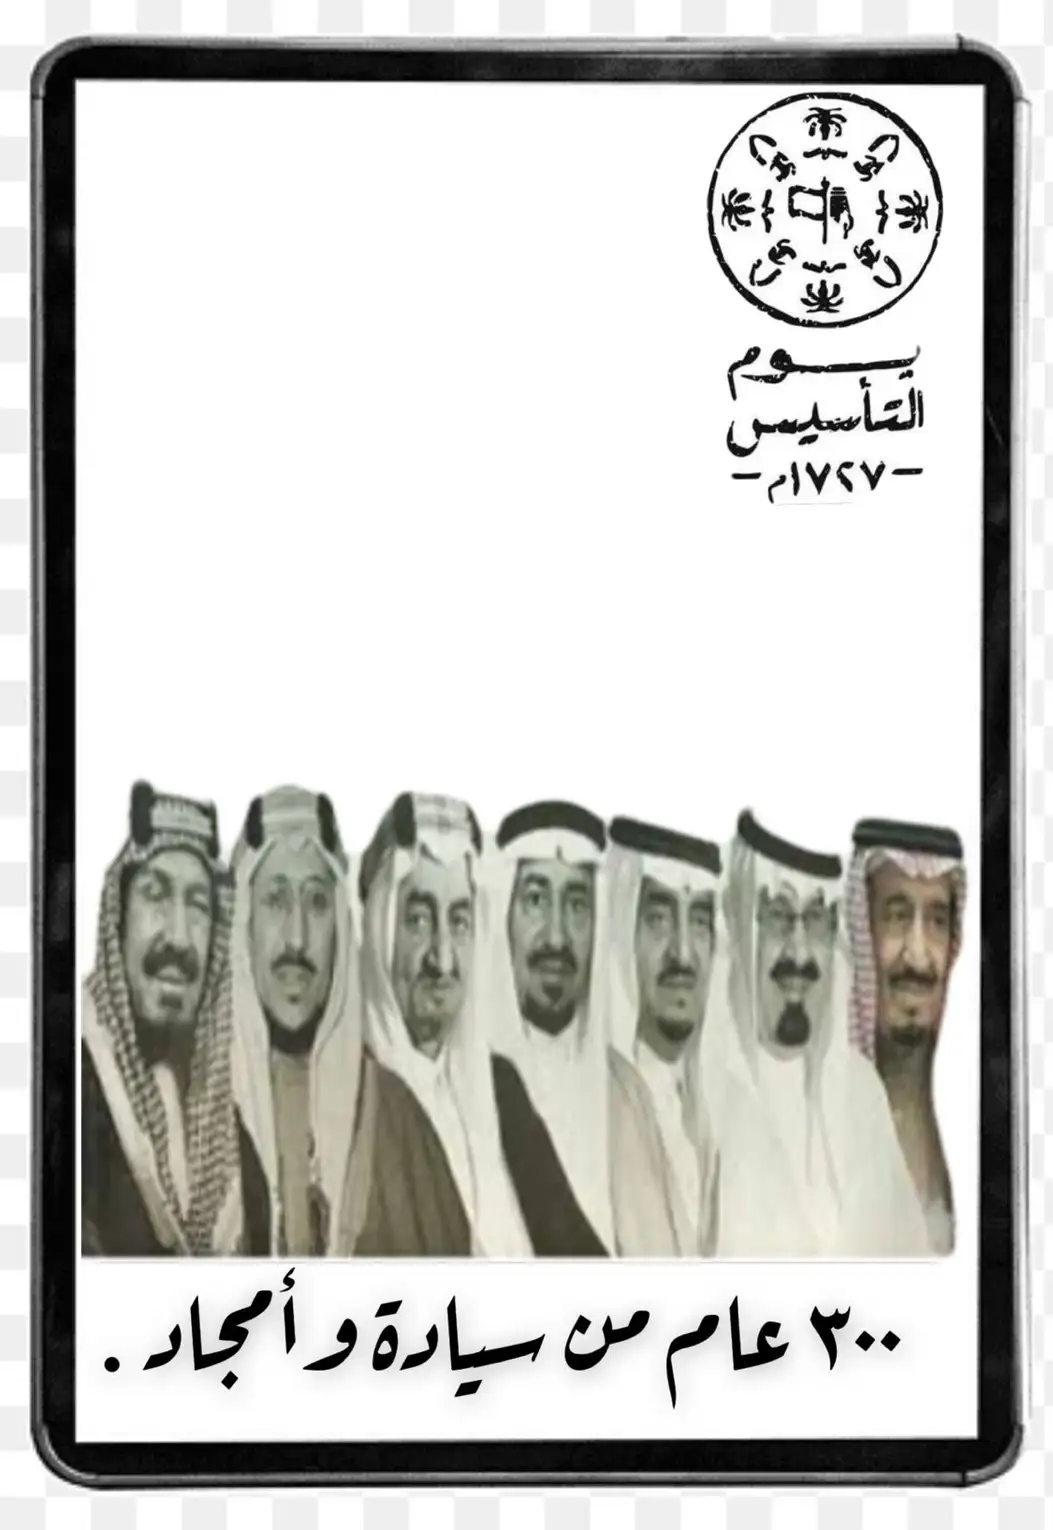 صور عن يوم التاسيس السعودي